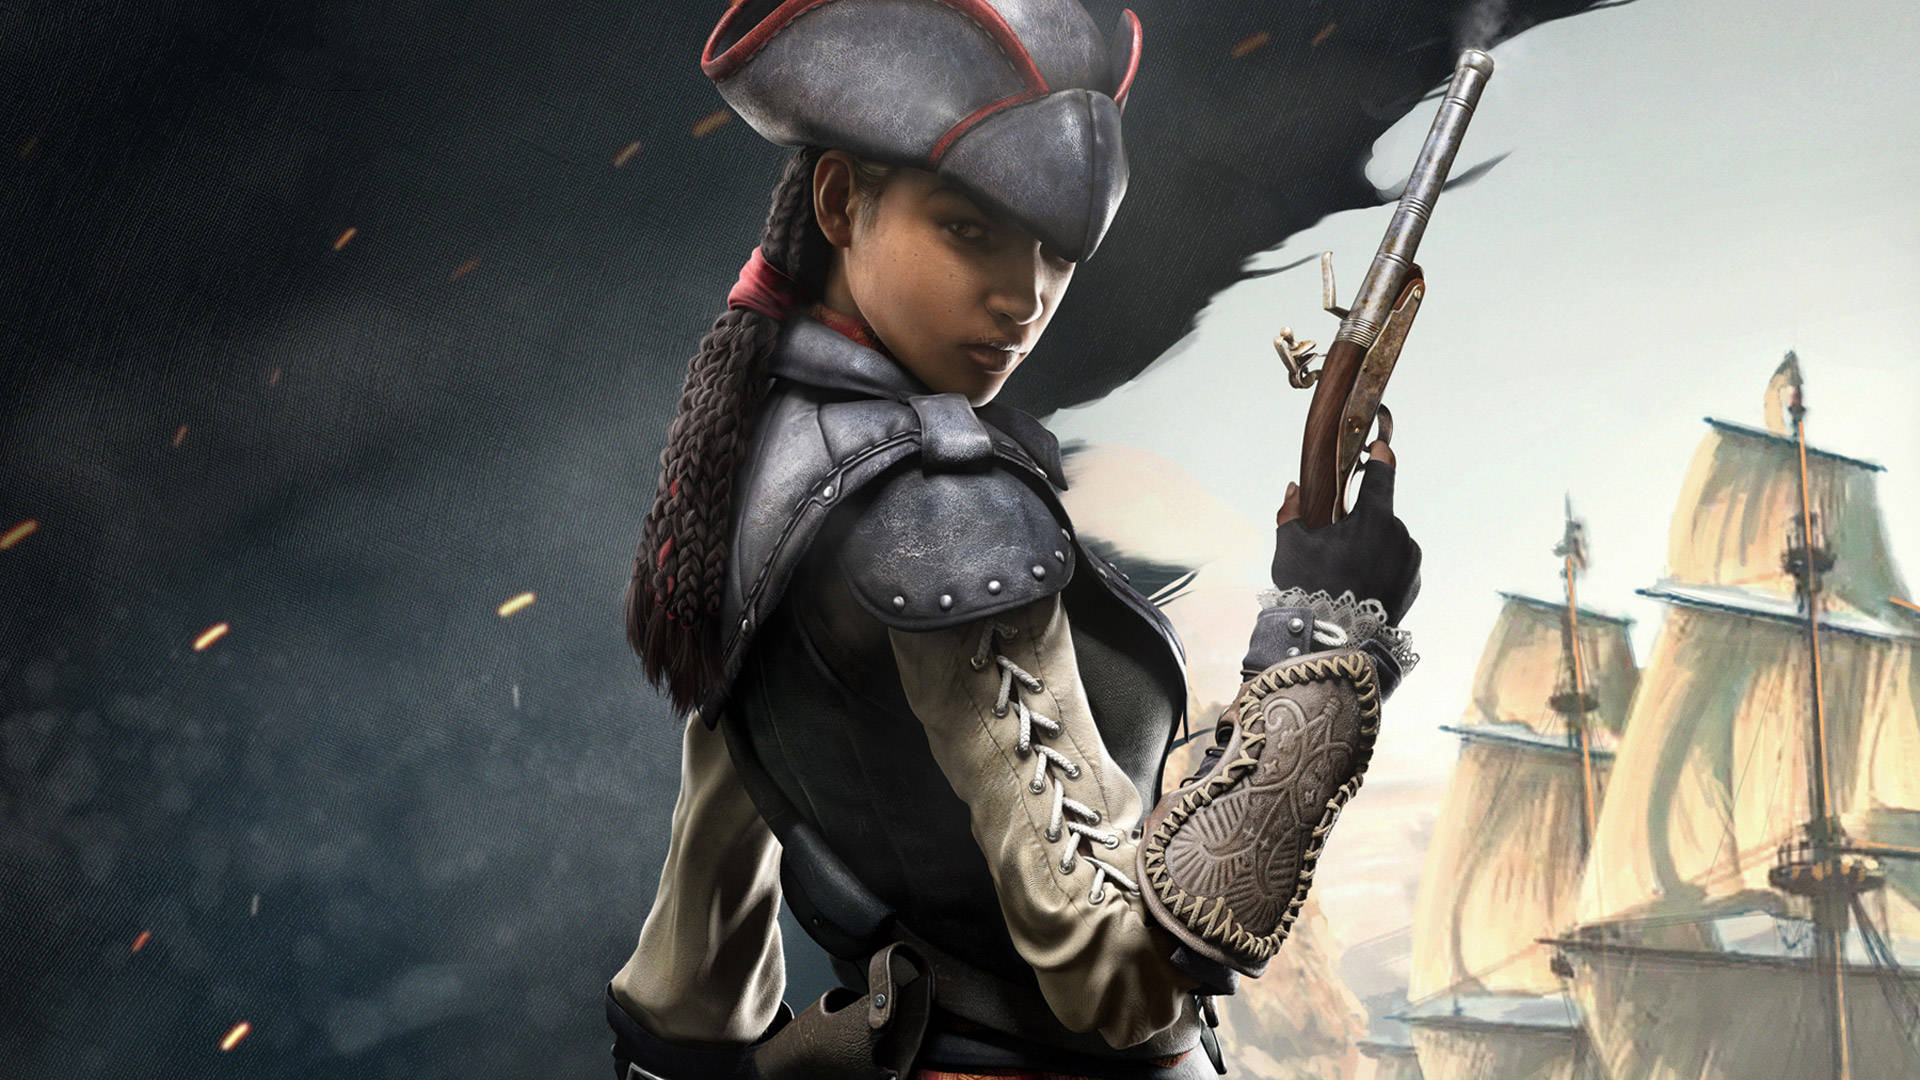 Assassin's Creed Black Flag - Aveline De Grandpre In Action Background